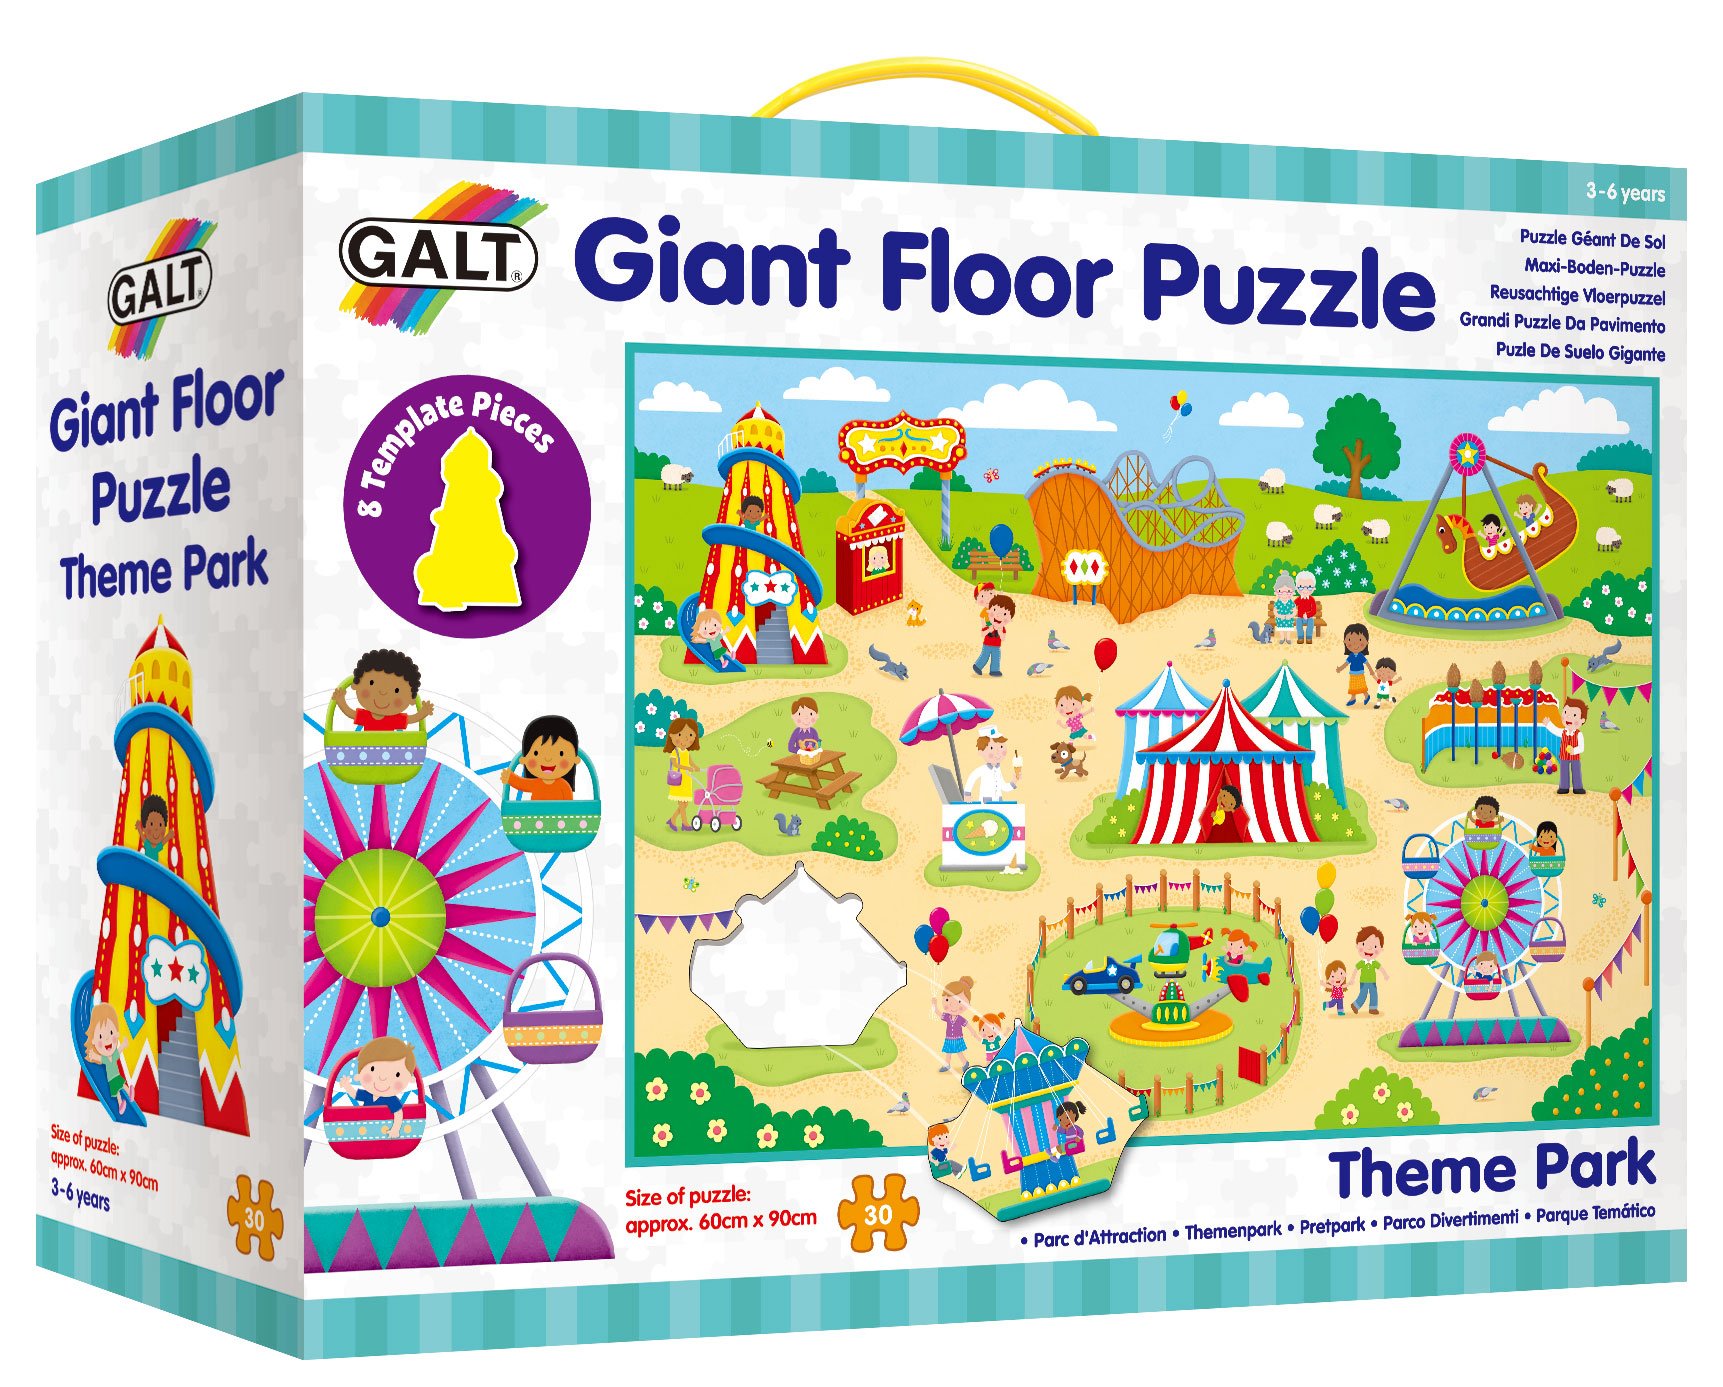 Galt Zábavní park - Velké podlahové puzzle